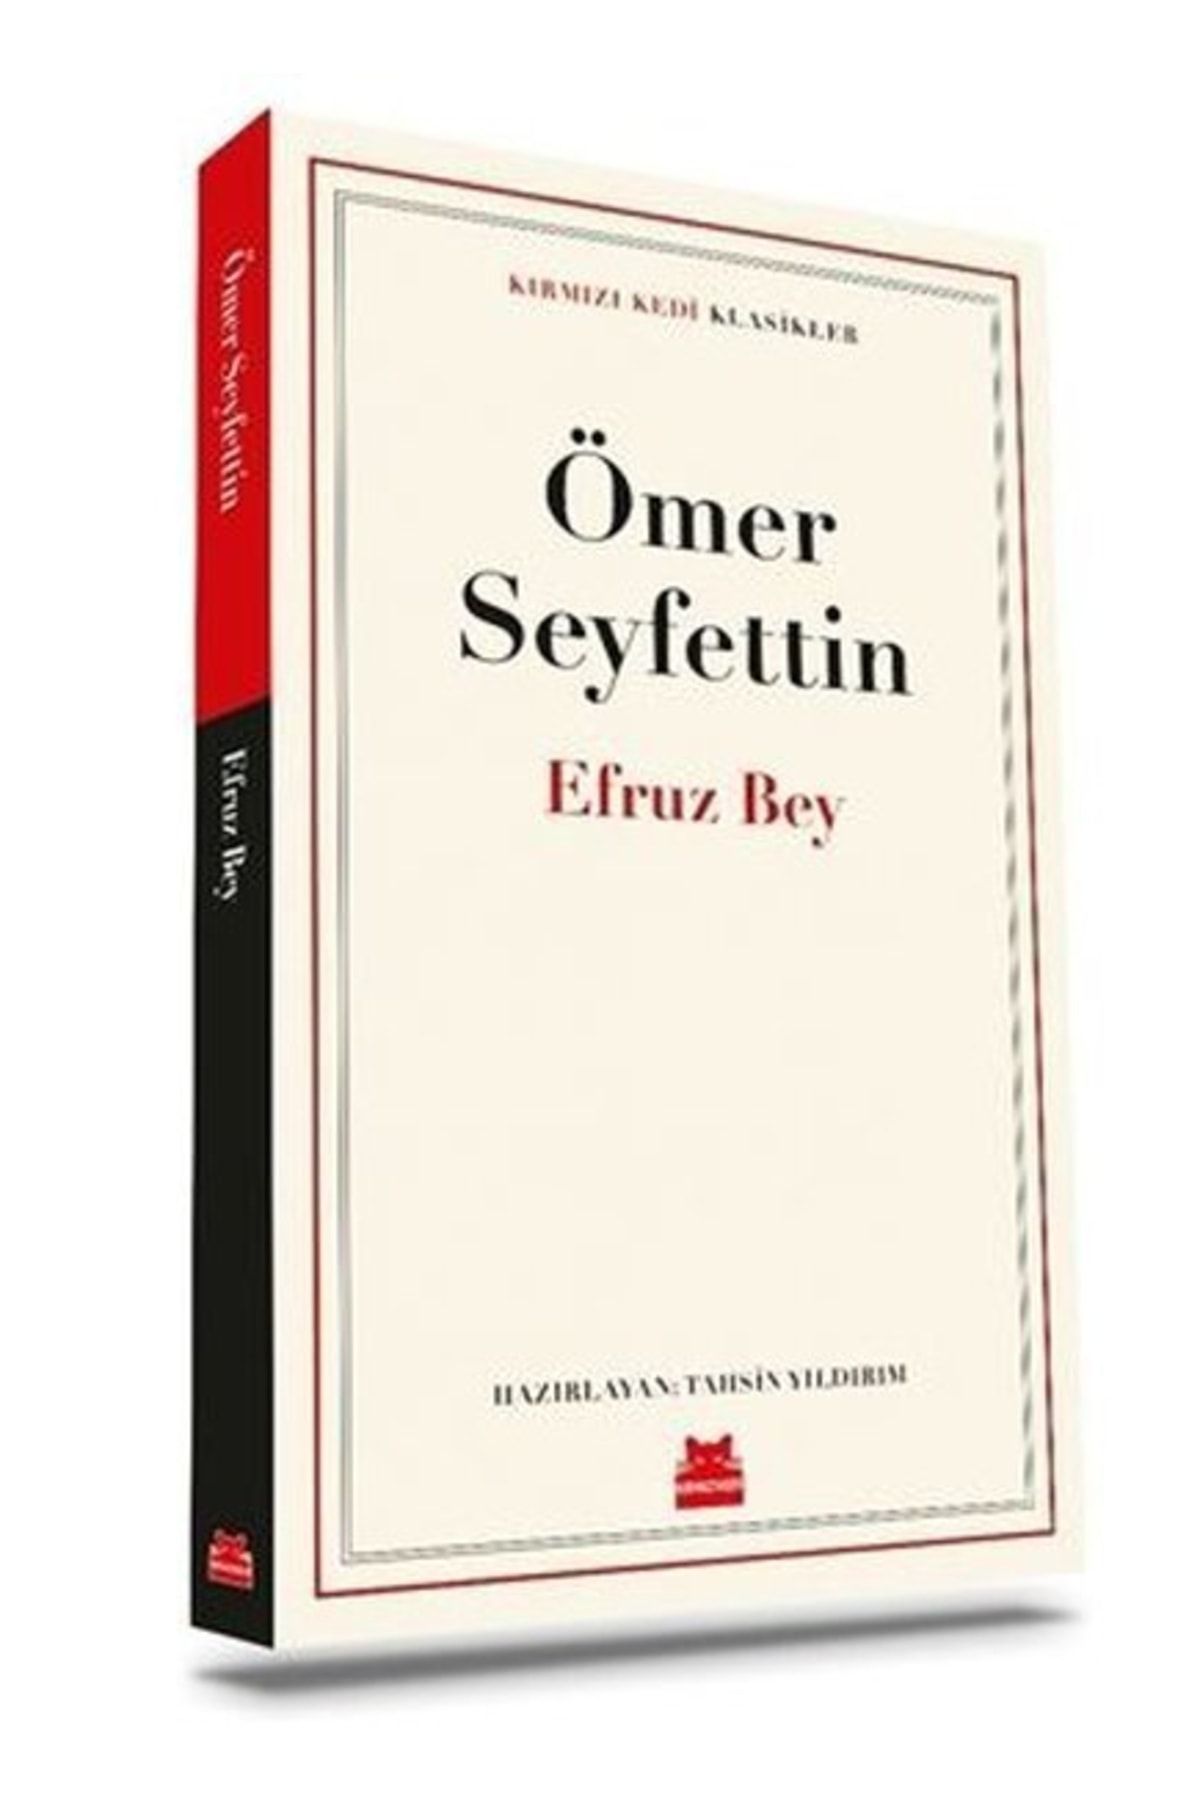 Kırmızı Kedi Yayınları Efruz Bey - Klasikler Ömer Seyfettin